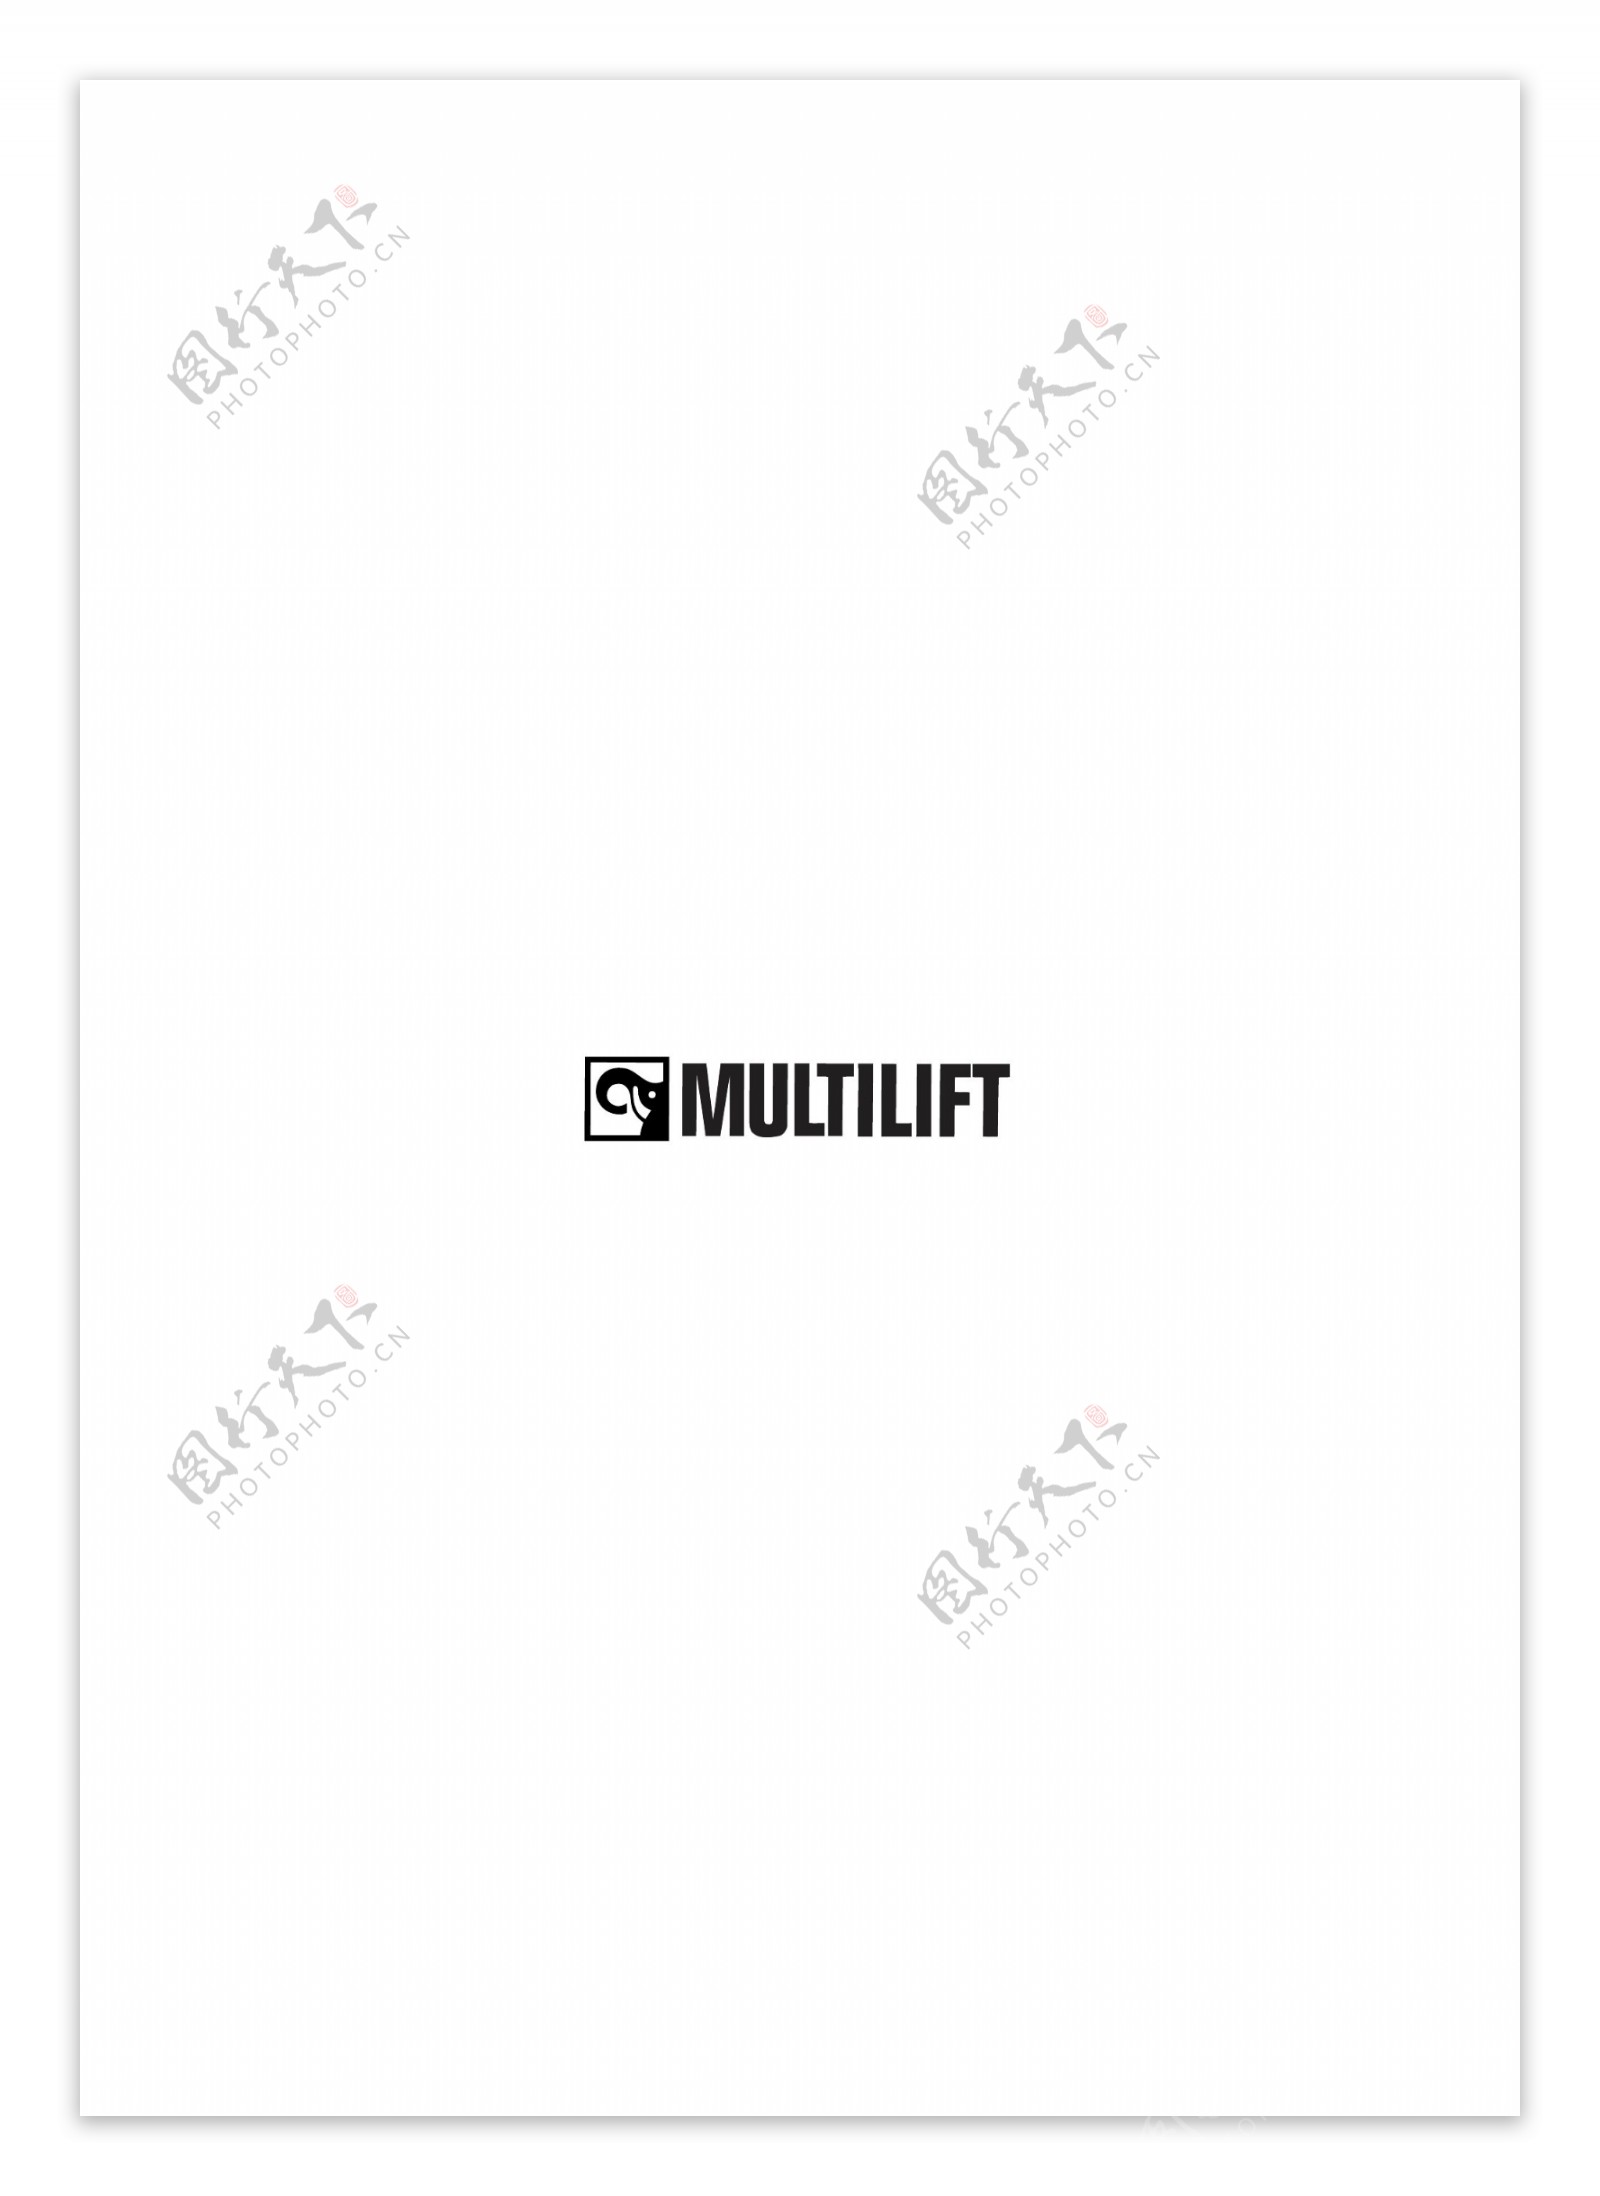 Multiliftlogo设计欣赏Multilift轻轨地铁标志下载标志设计欣赏